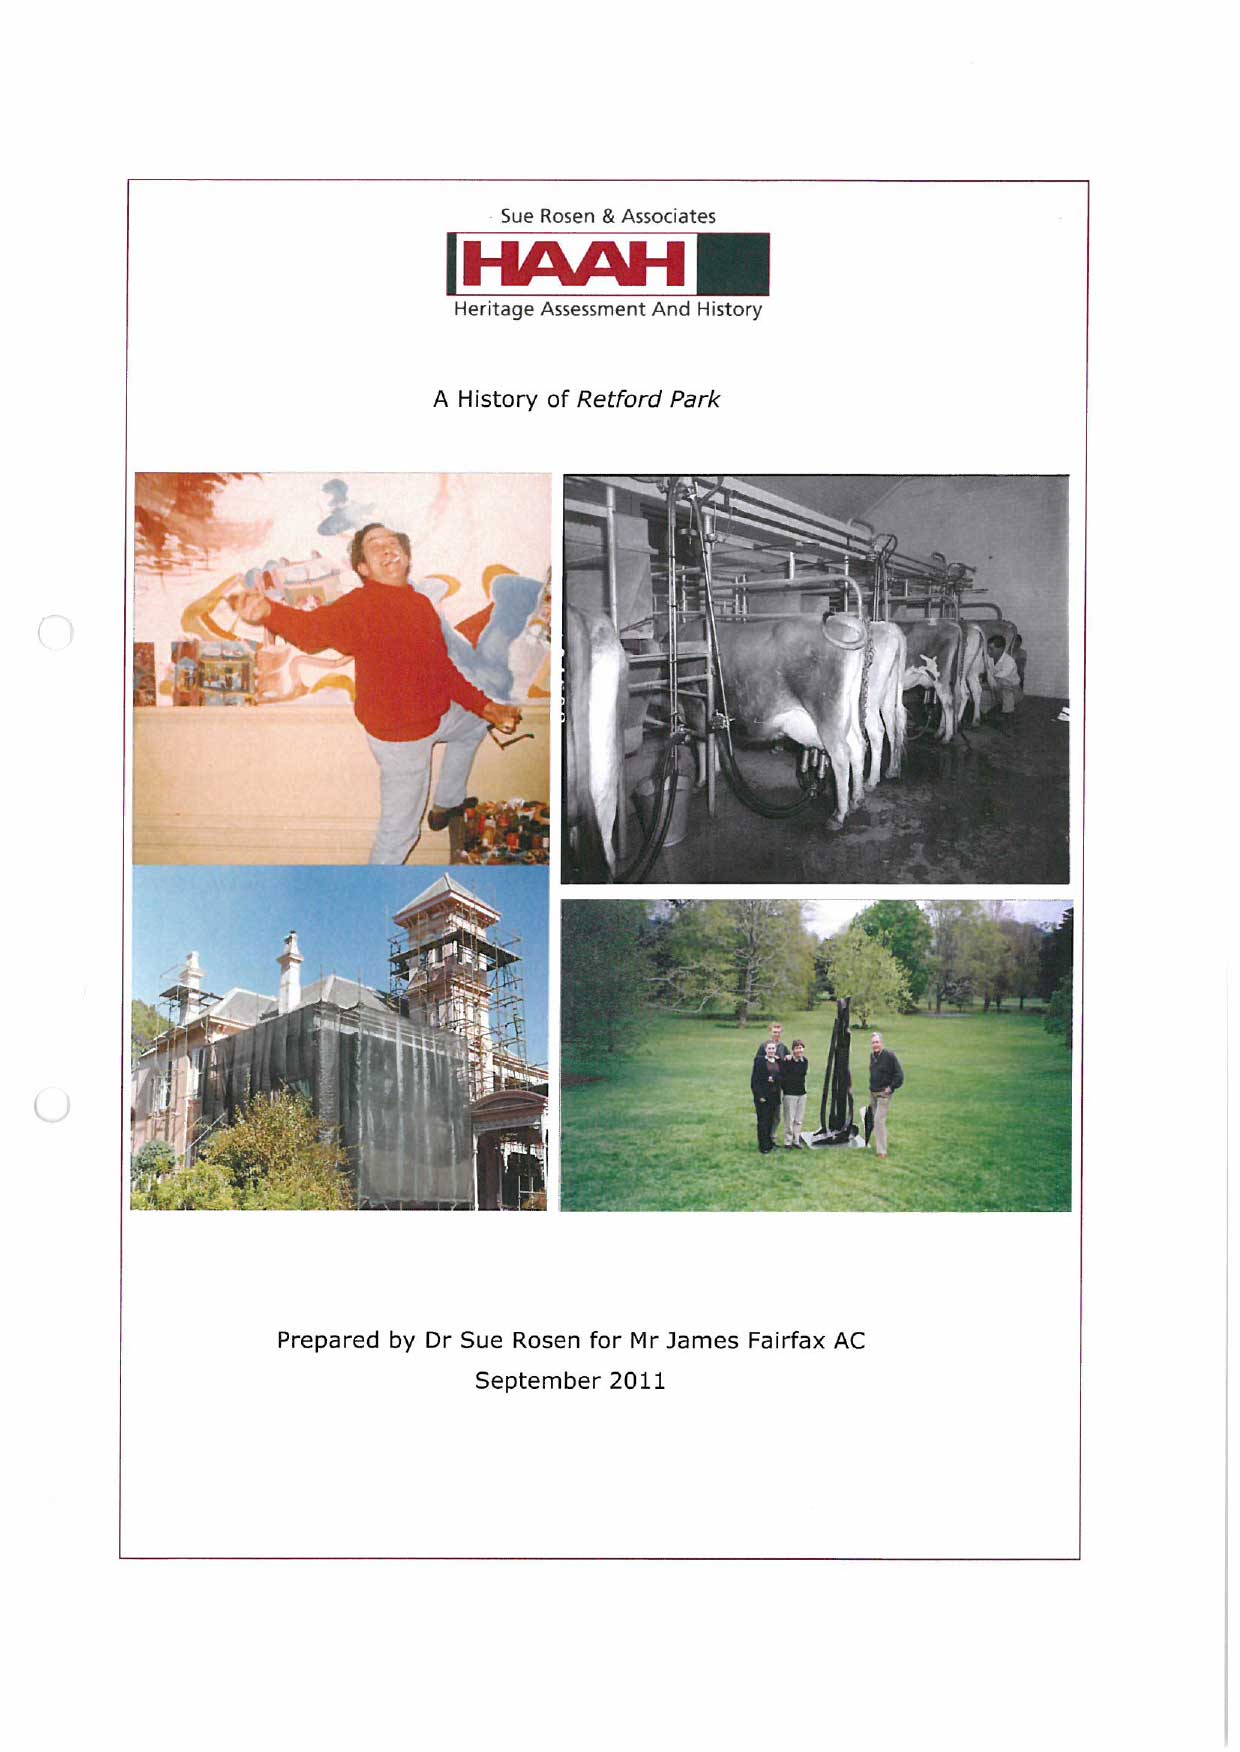 Sue Rosen & Associates - a History of Retford Park September 2011